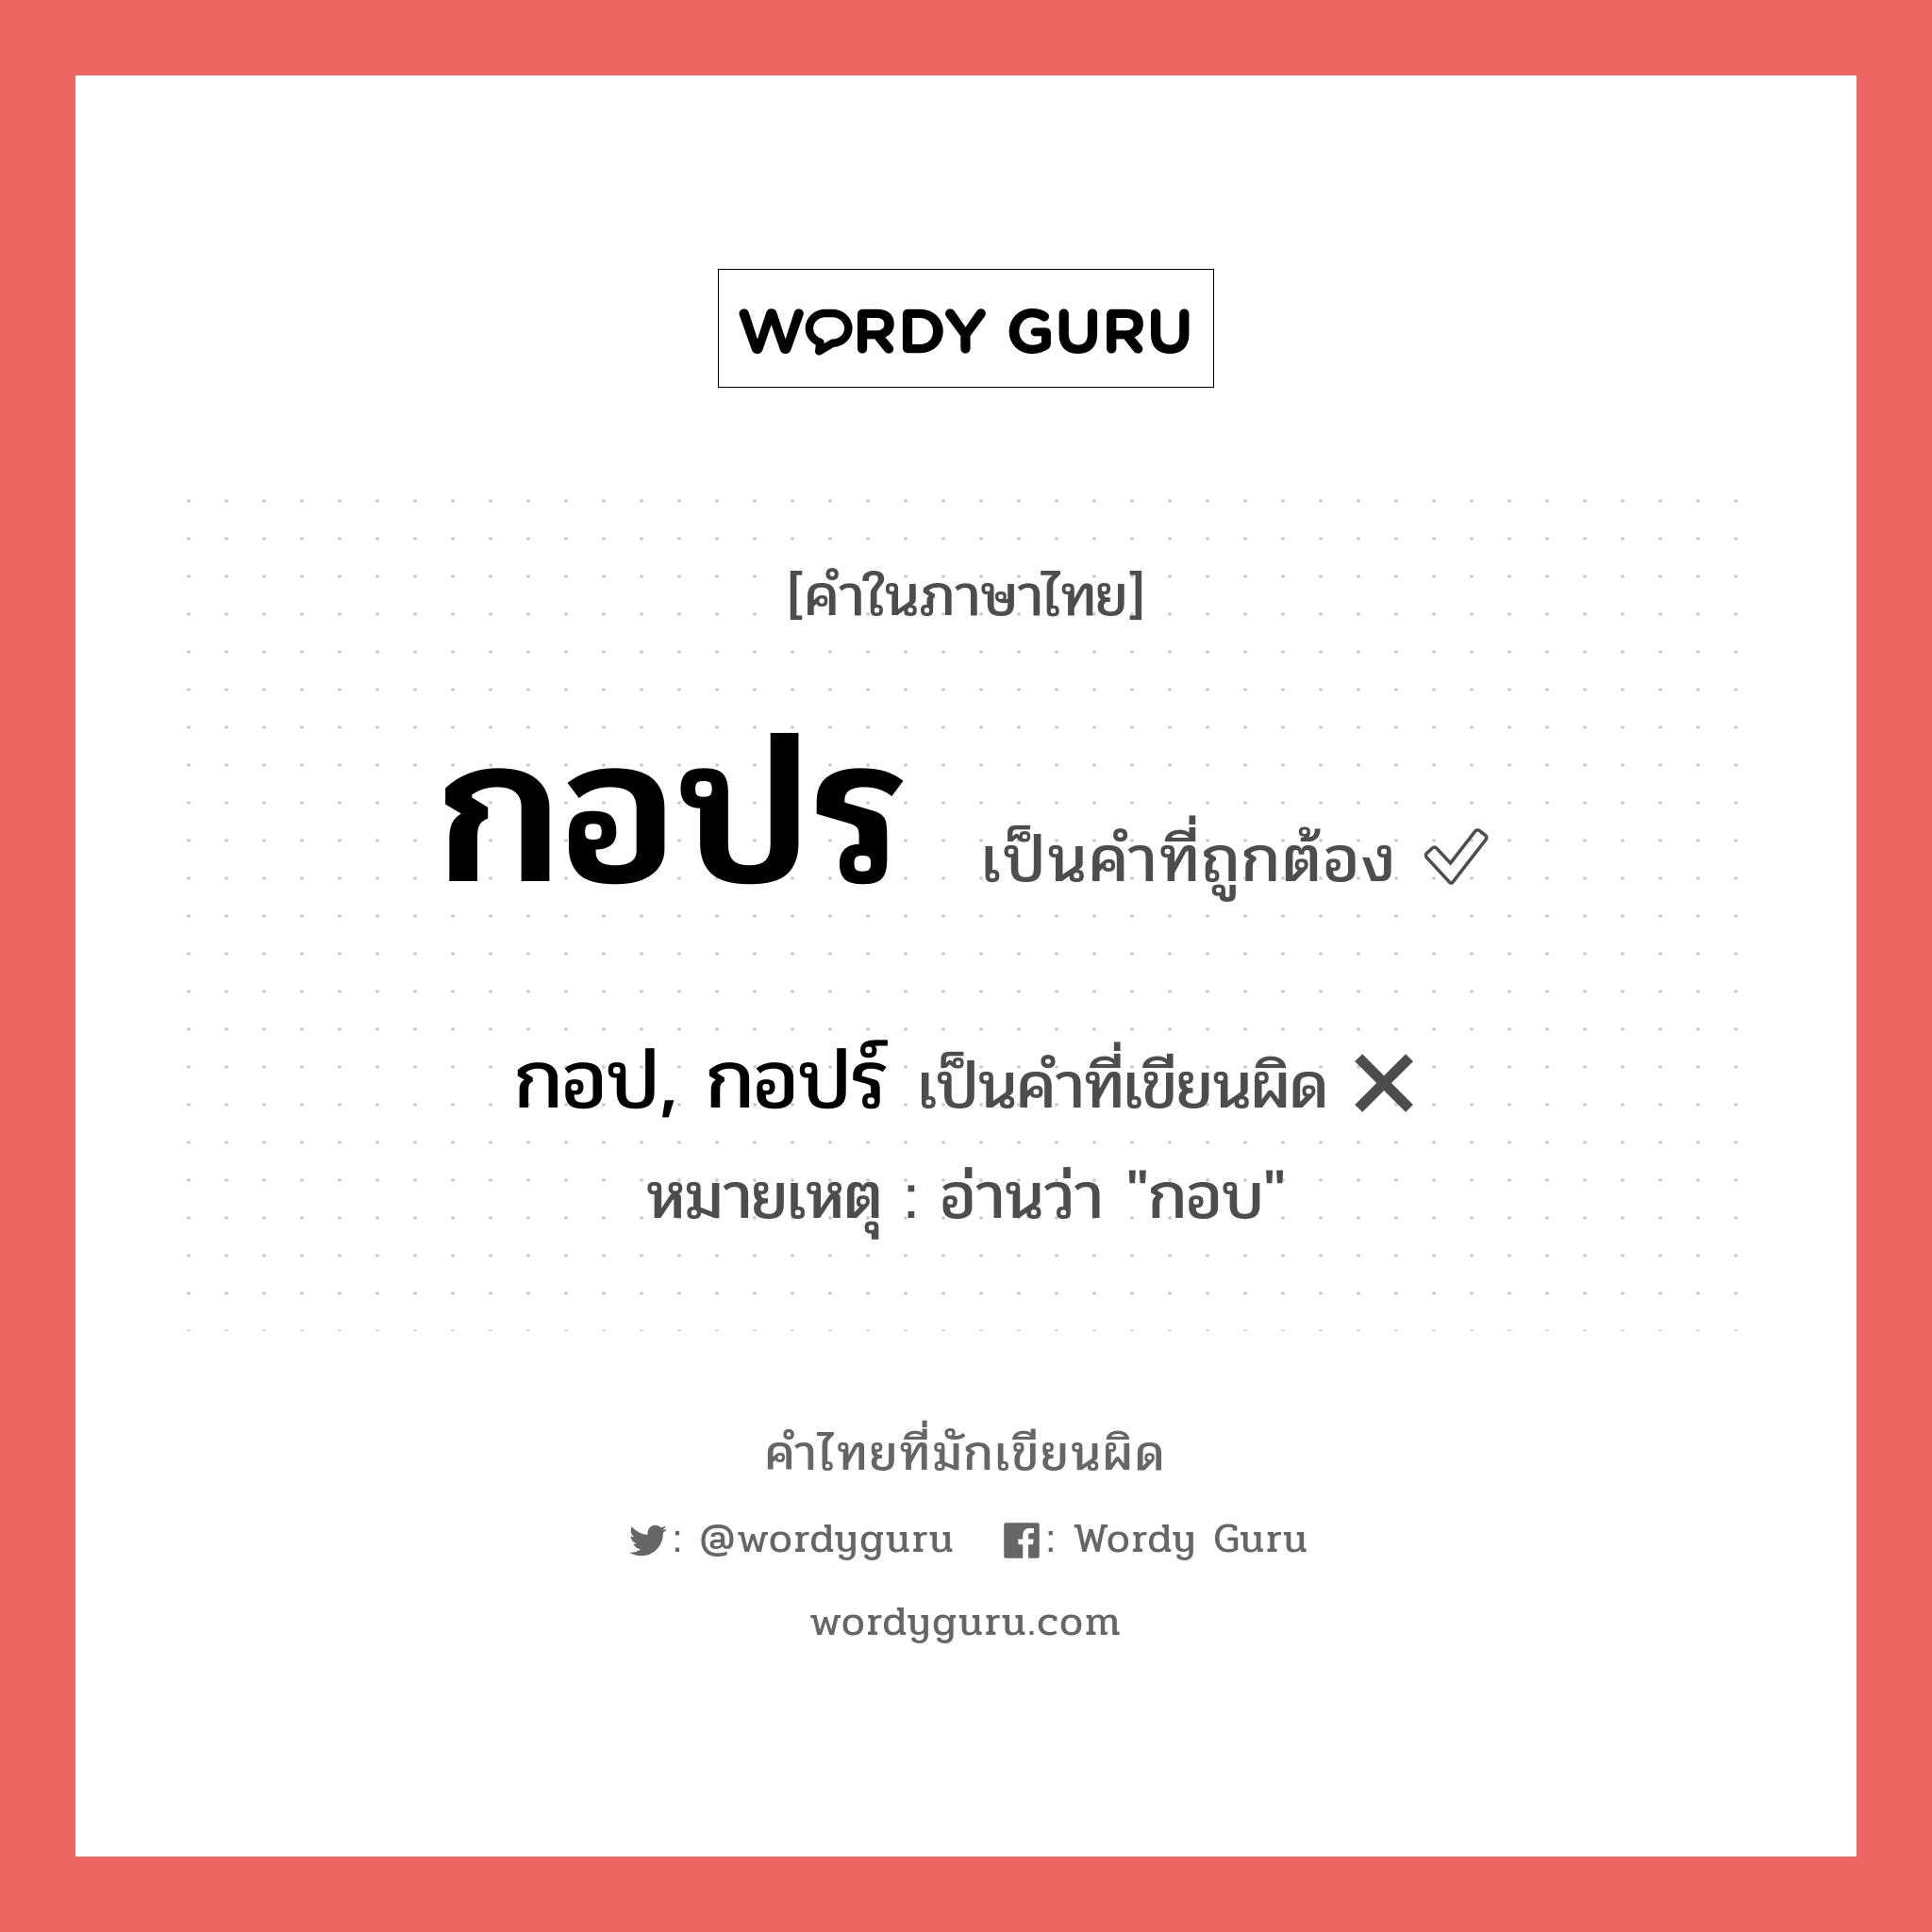 กอปร หรือ กอป, กอปร์ เขียนยังไง? คำไหนเขียนถูก?, คำในภาษาไทยที่มักเขียนผิด กอปร คำที่ผิด ❌ กอป, กอปร์ หมายเหตุ อ่านว่า "กอบ"